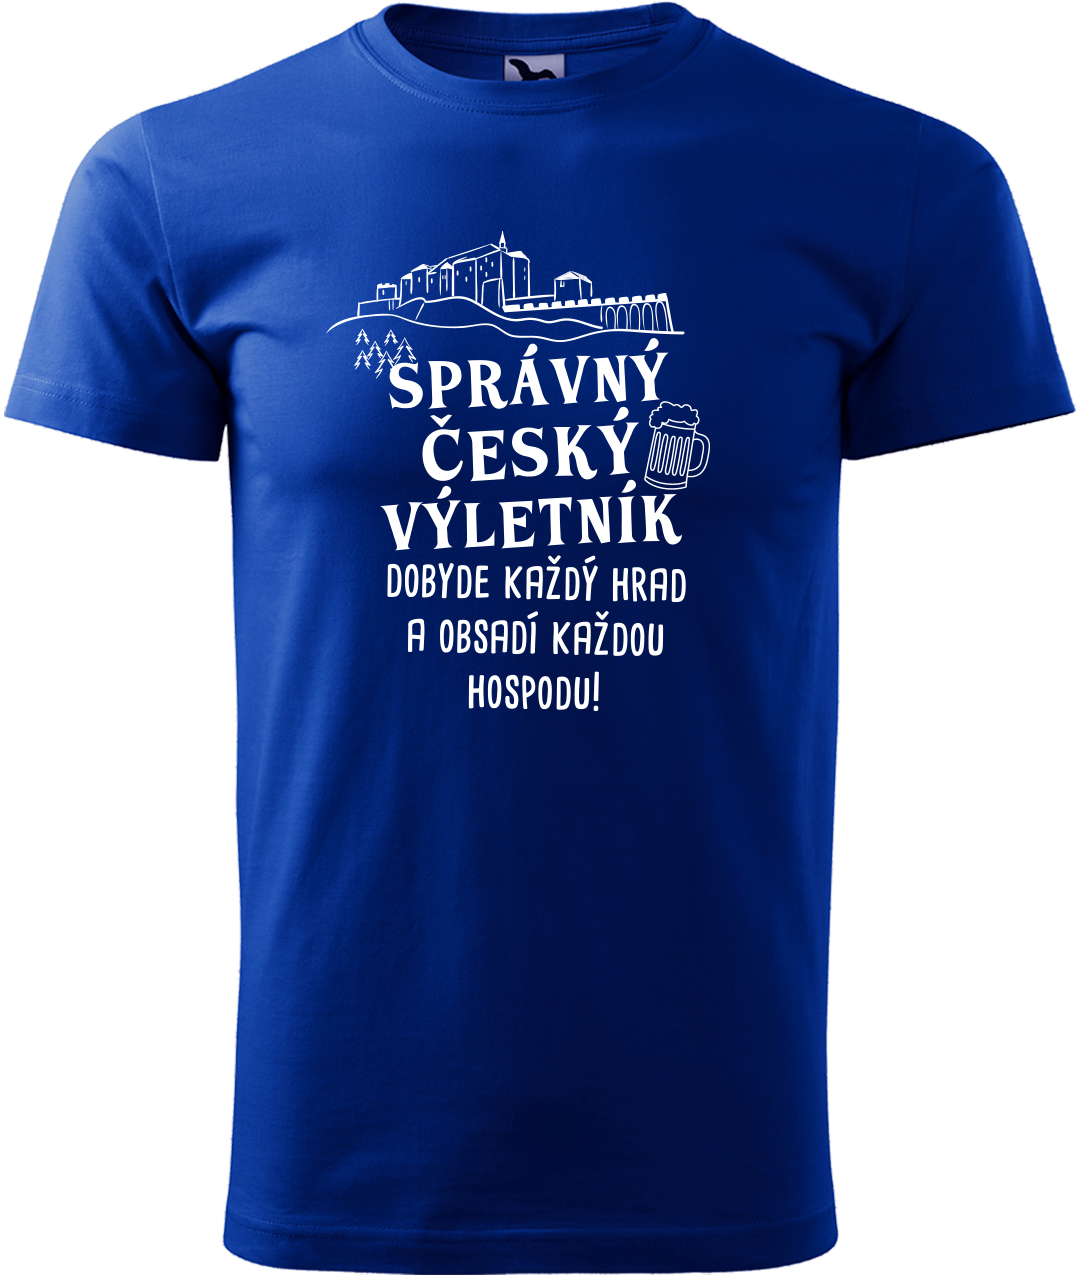 Pánské cestovatelské tričko - Správný český výletník Velikost: M, Barva: Královská modrá (05), Střih: pánský